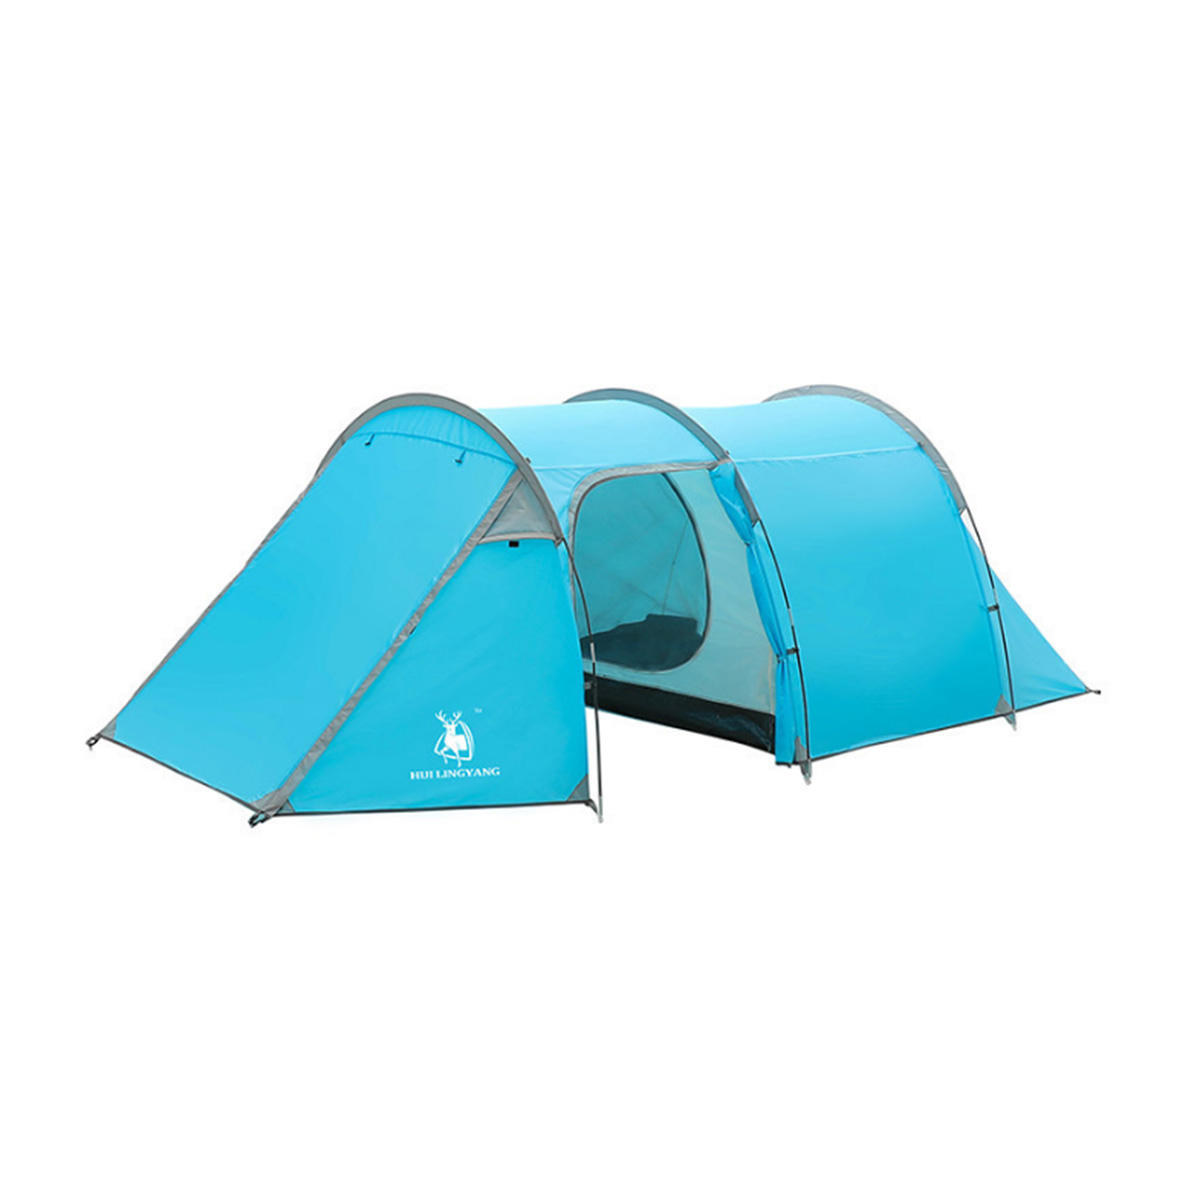 Campingzelt für 4-5 Personen, Strandzelt, großes Wanderzelt, wasserdichtes Sonnensegel.